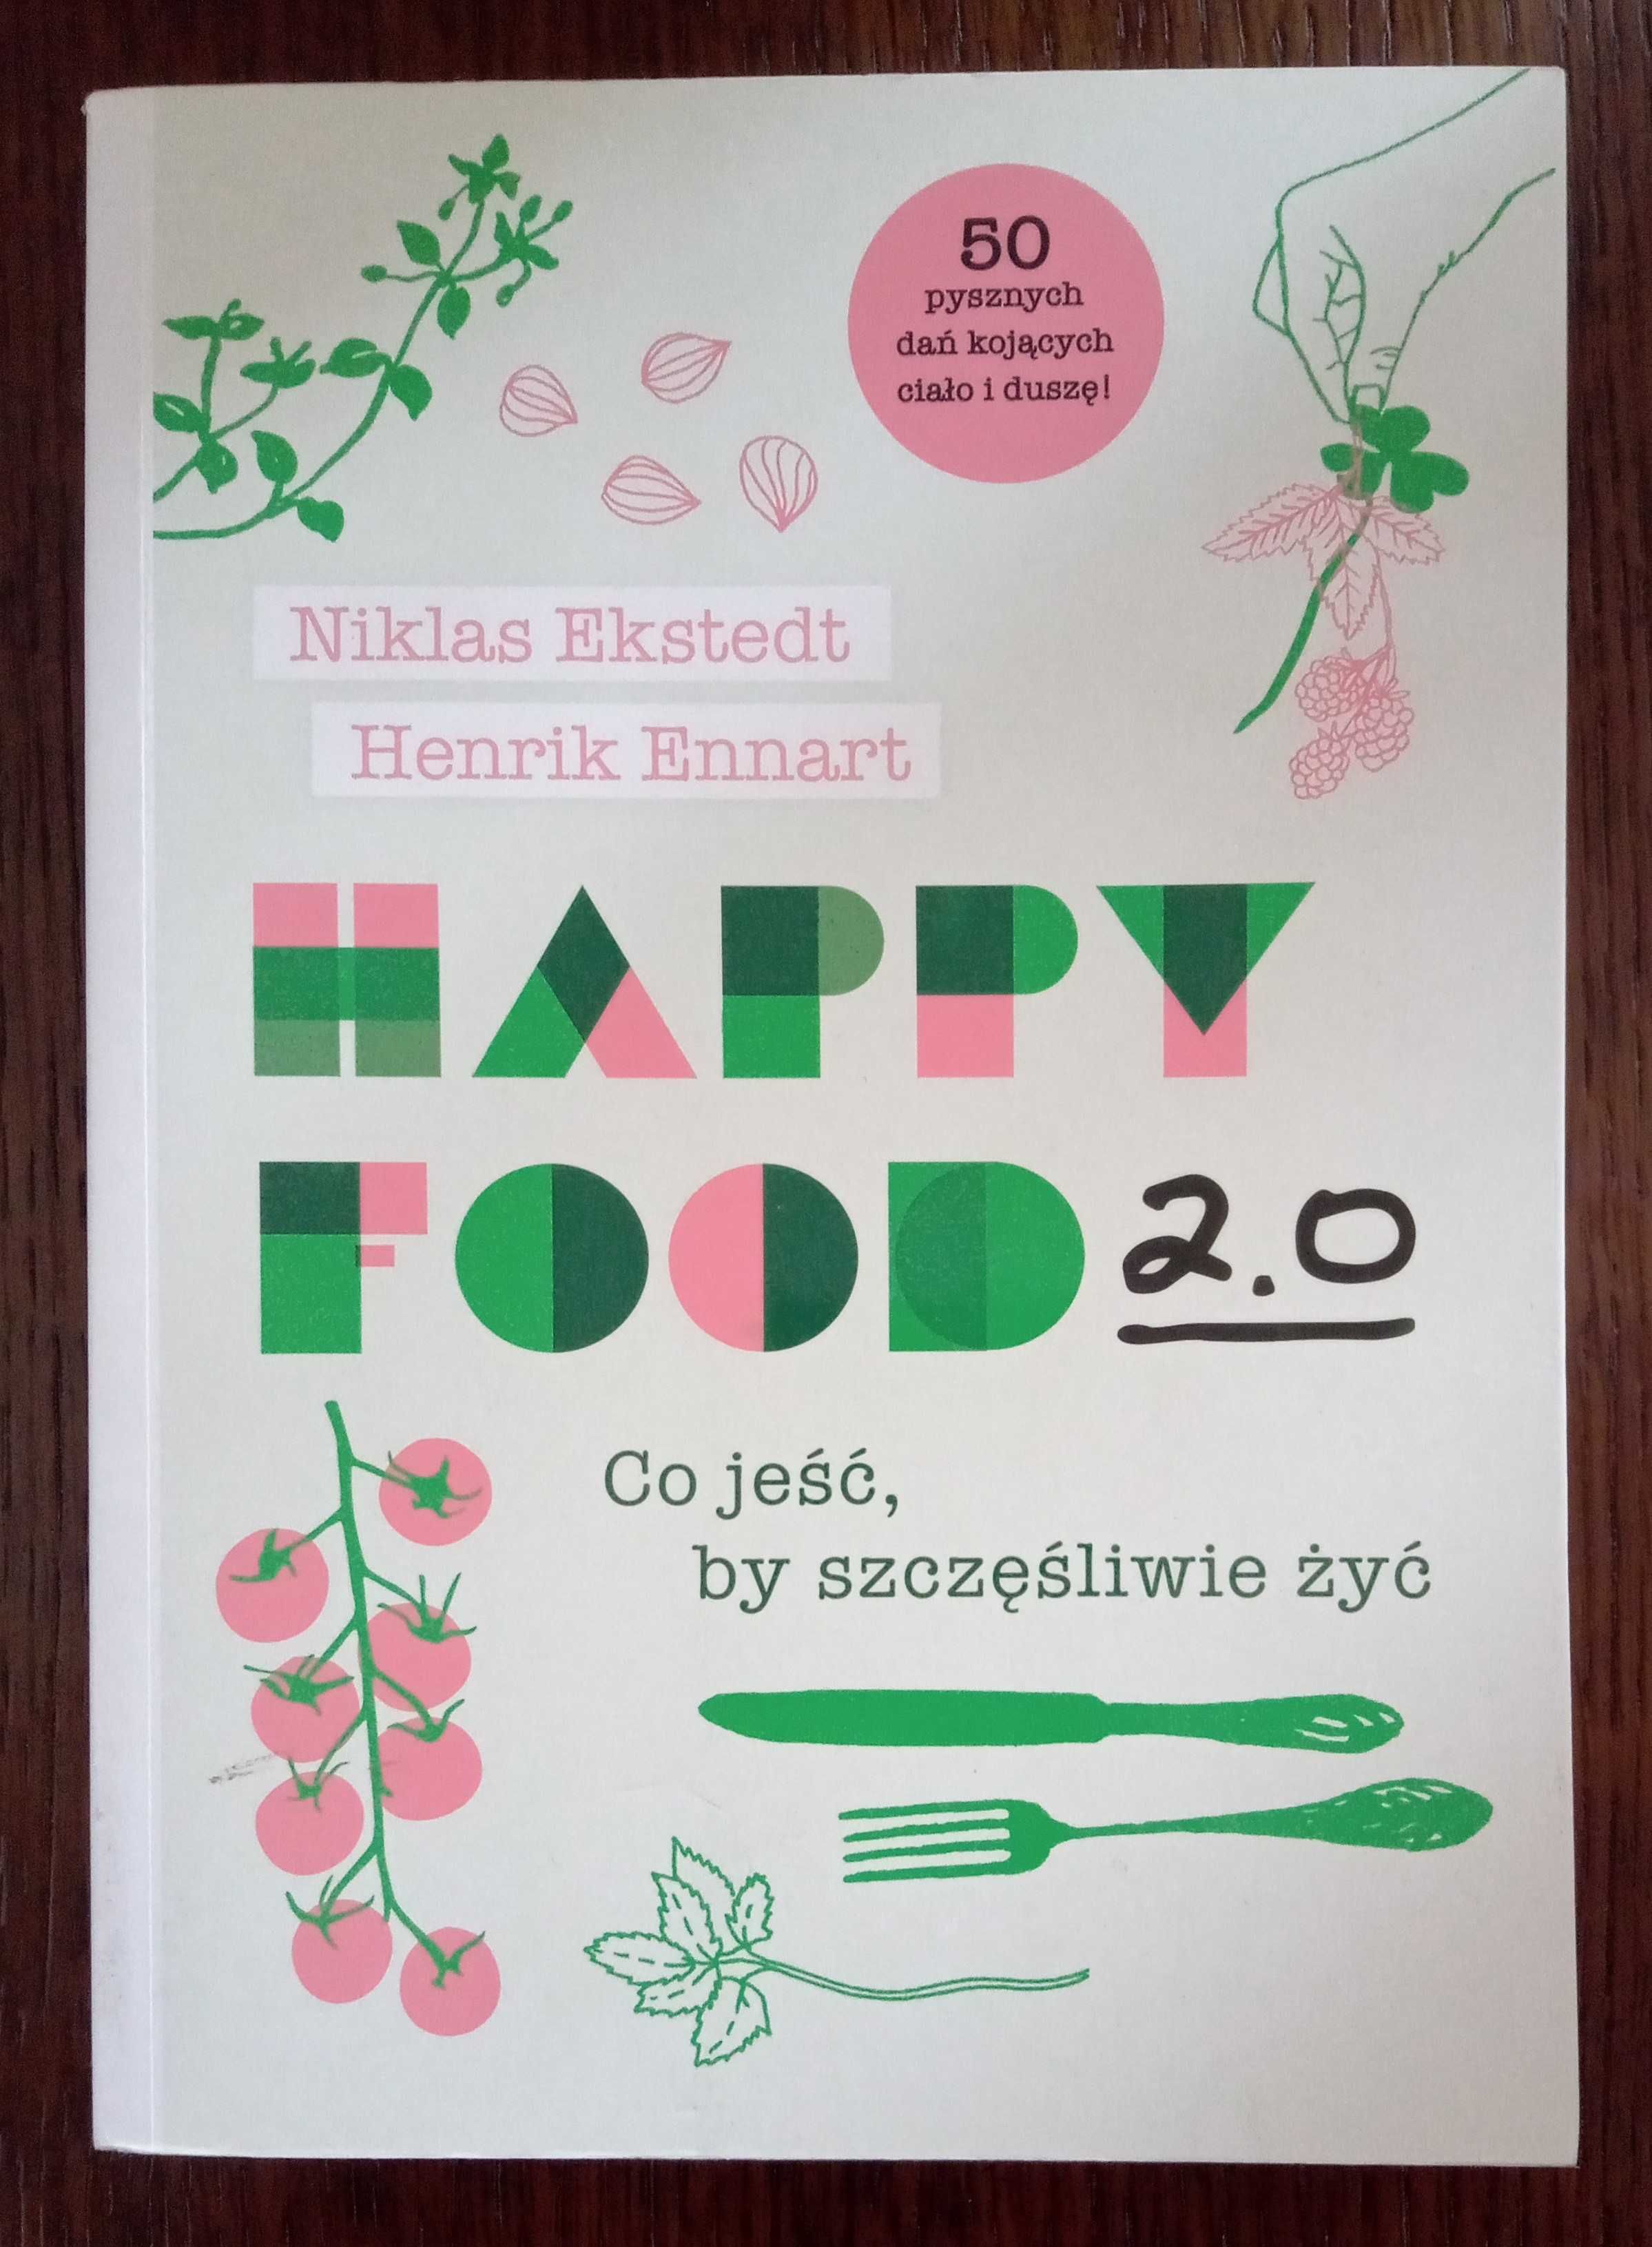 Happy Food 2.0 - Niklas Ekstedt, Henrik Ennart